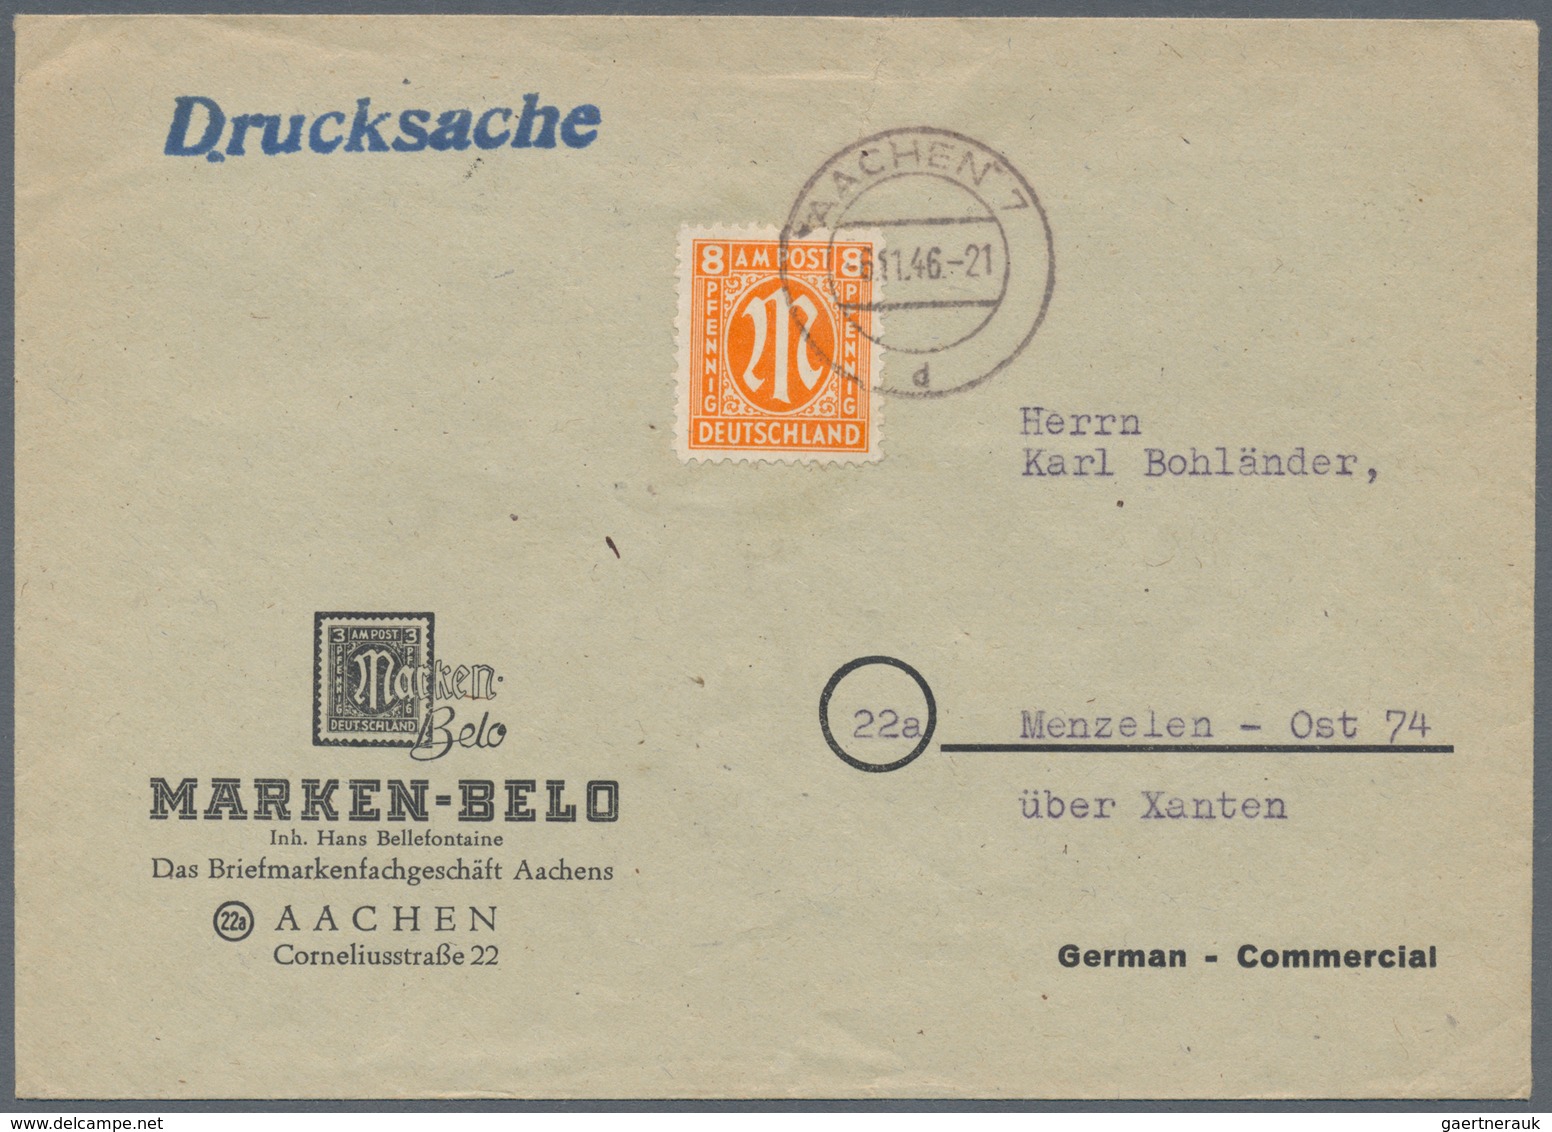 Bizone: 1945/1946, AM-POST, vielseitiger Bestand von ca. 480 Bedarfs-Briefen/-Karten in sehr guter V